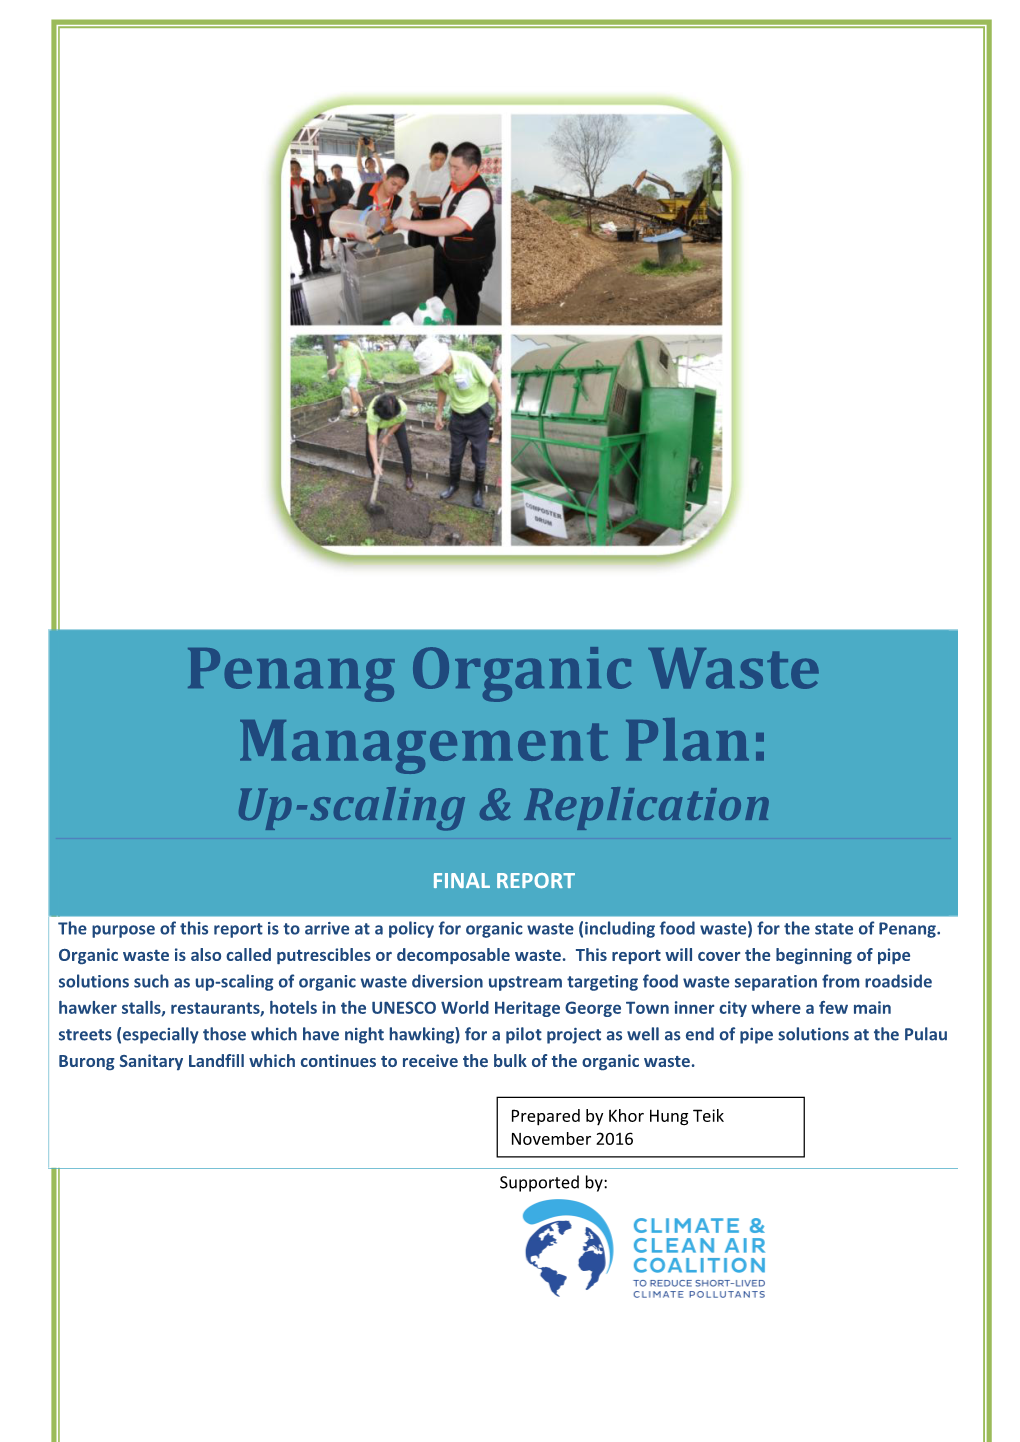 Penang Organic Waste Management Plan: Up-Scaling & Replication